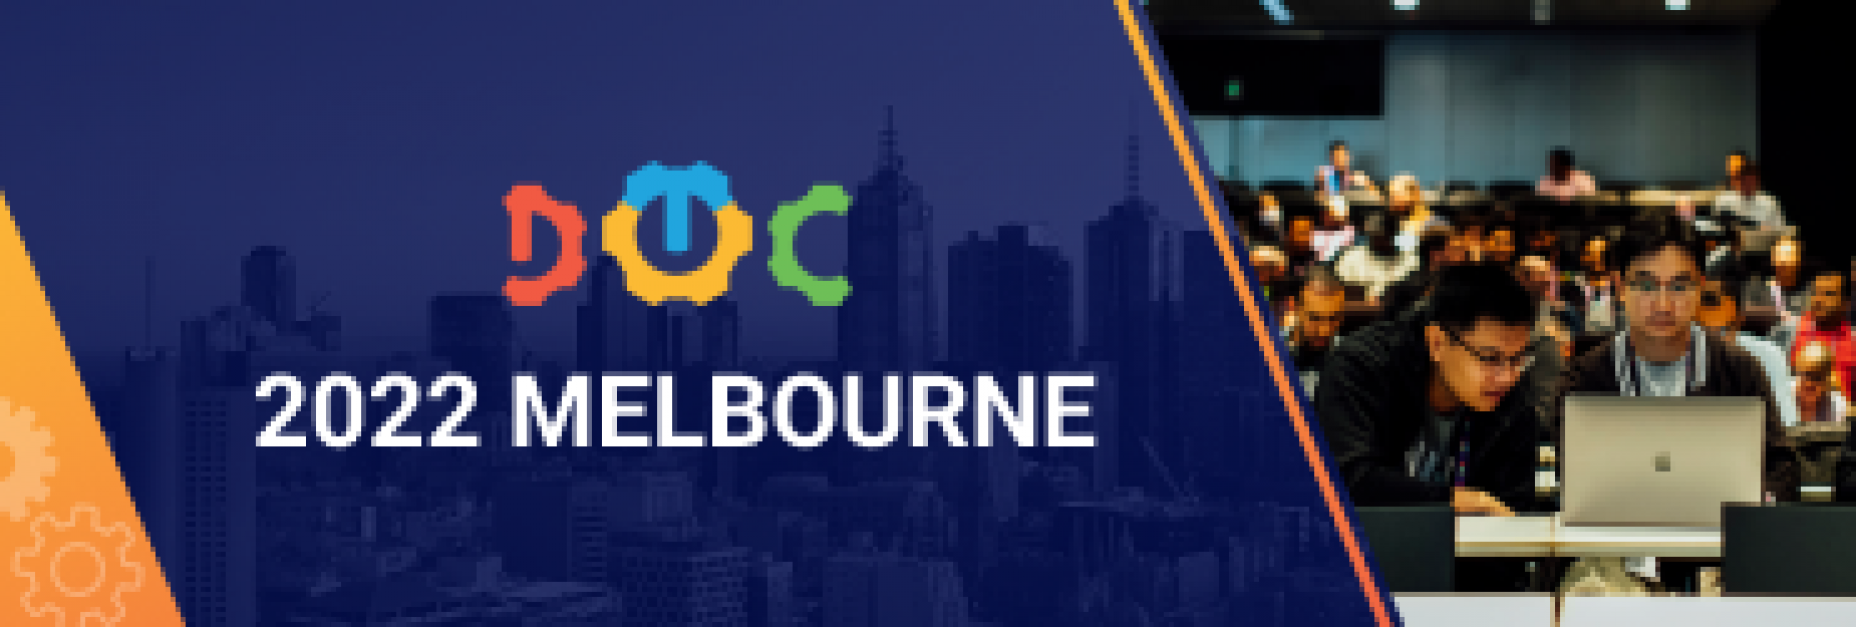 DevOps Conference Melbourne 2022